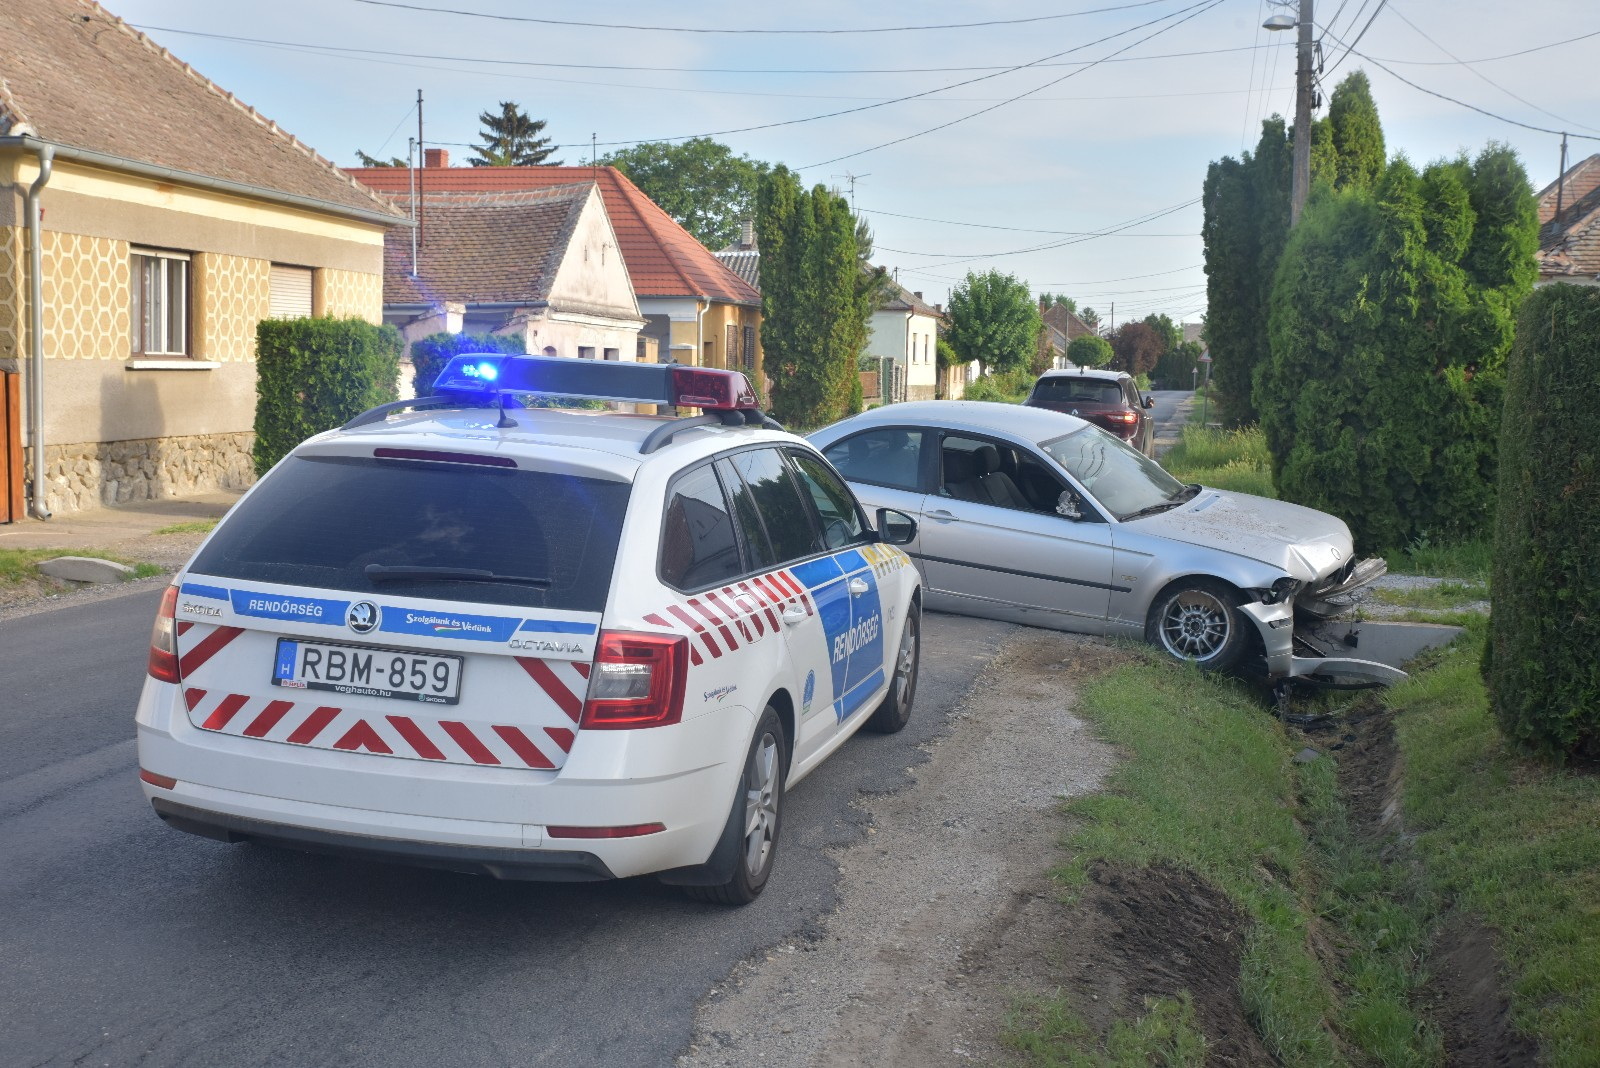 Ne hívj rendőrt, sokat ittam! - kérte a BMW sérült sofőrje, majd elmenekült a helyszínről